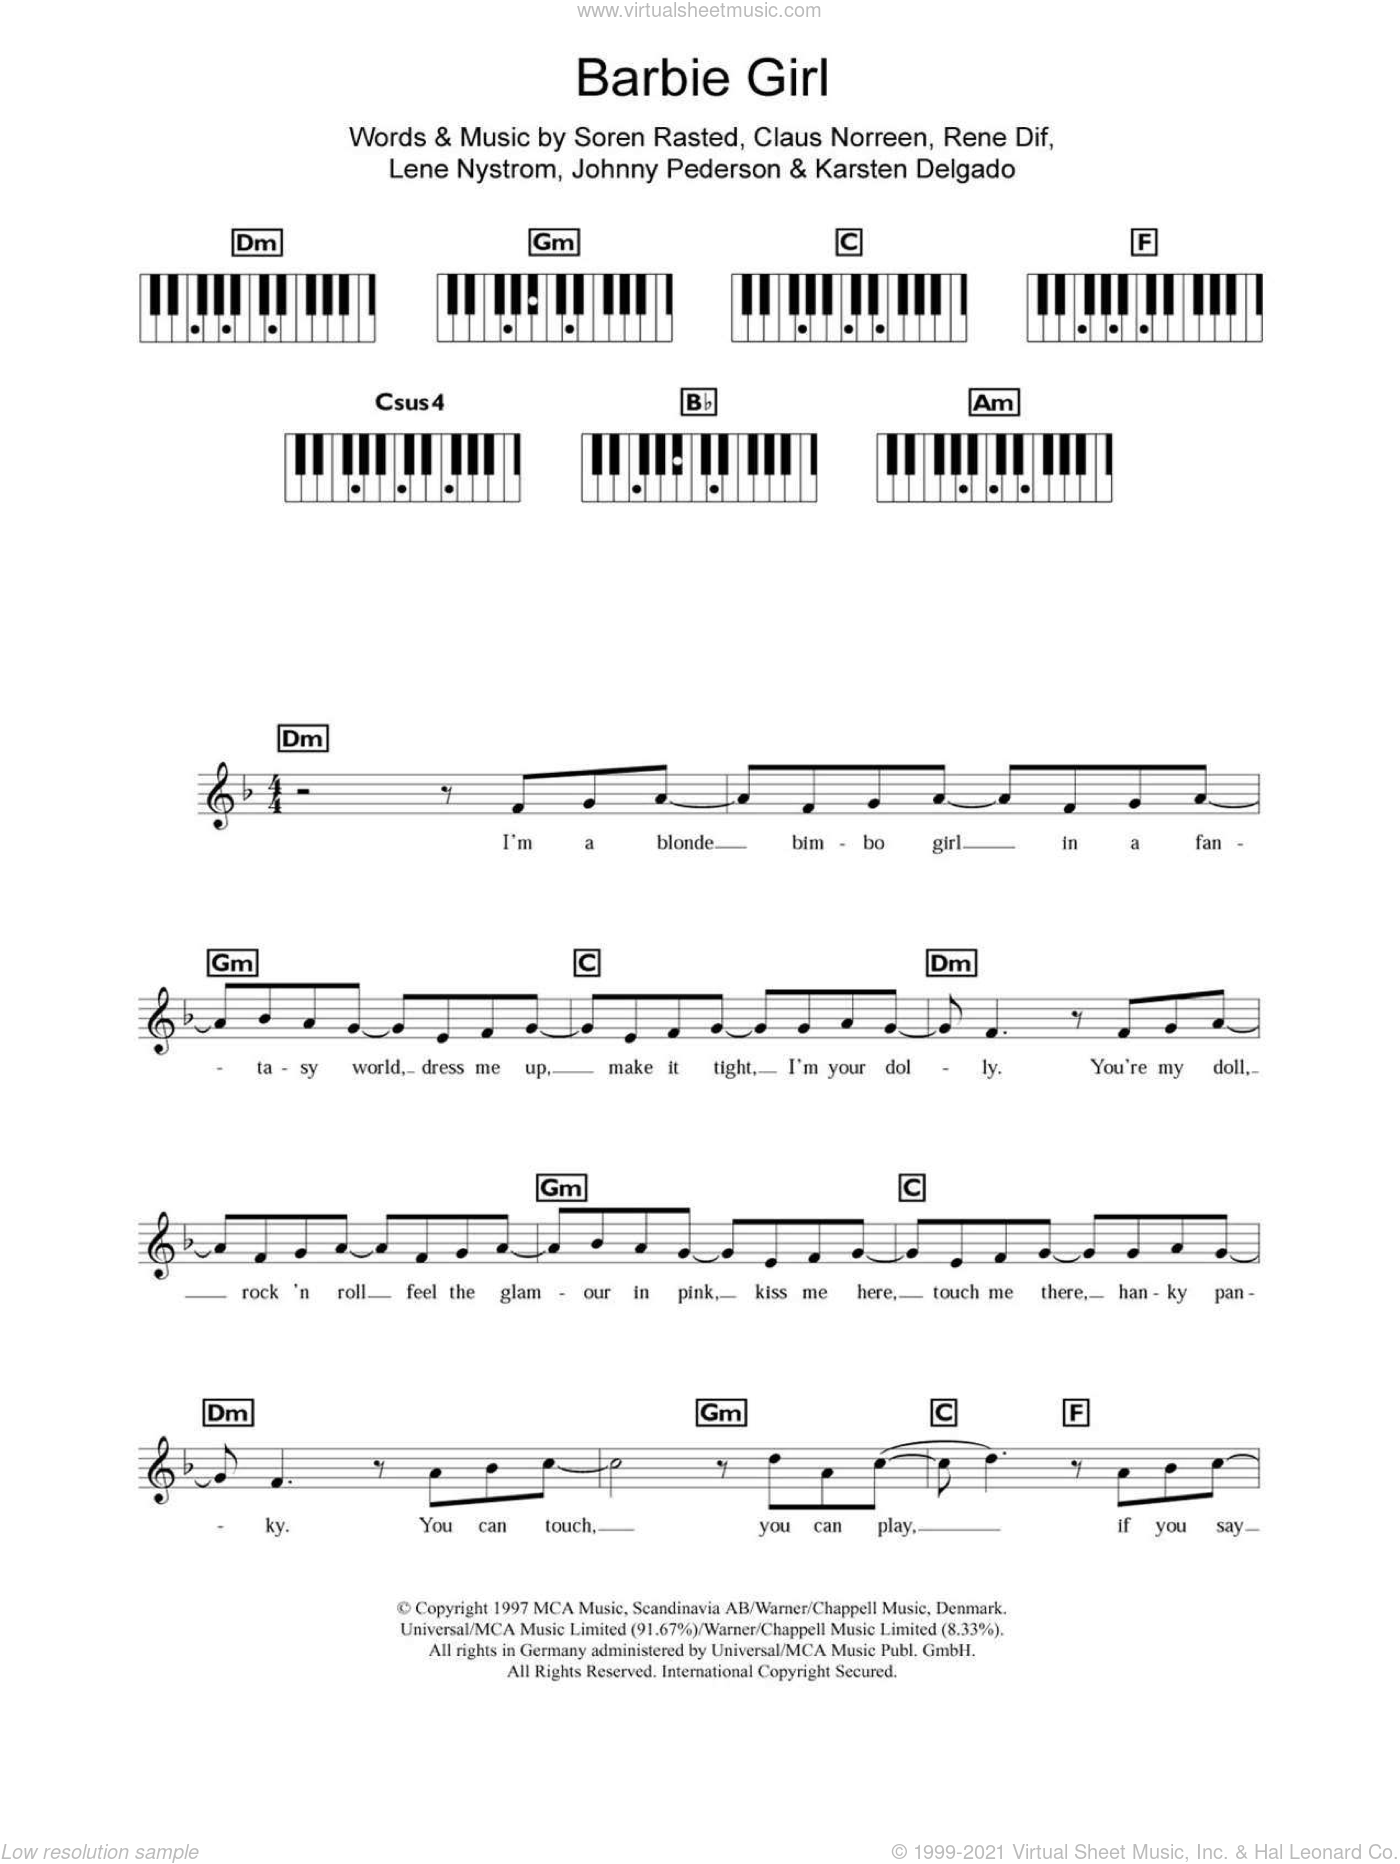 Aqua Barbie Girl Sheet Music For Piano Solo Chords Lyrics Melody - roblox piano sheet music friends